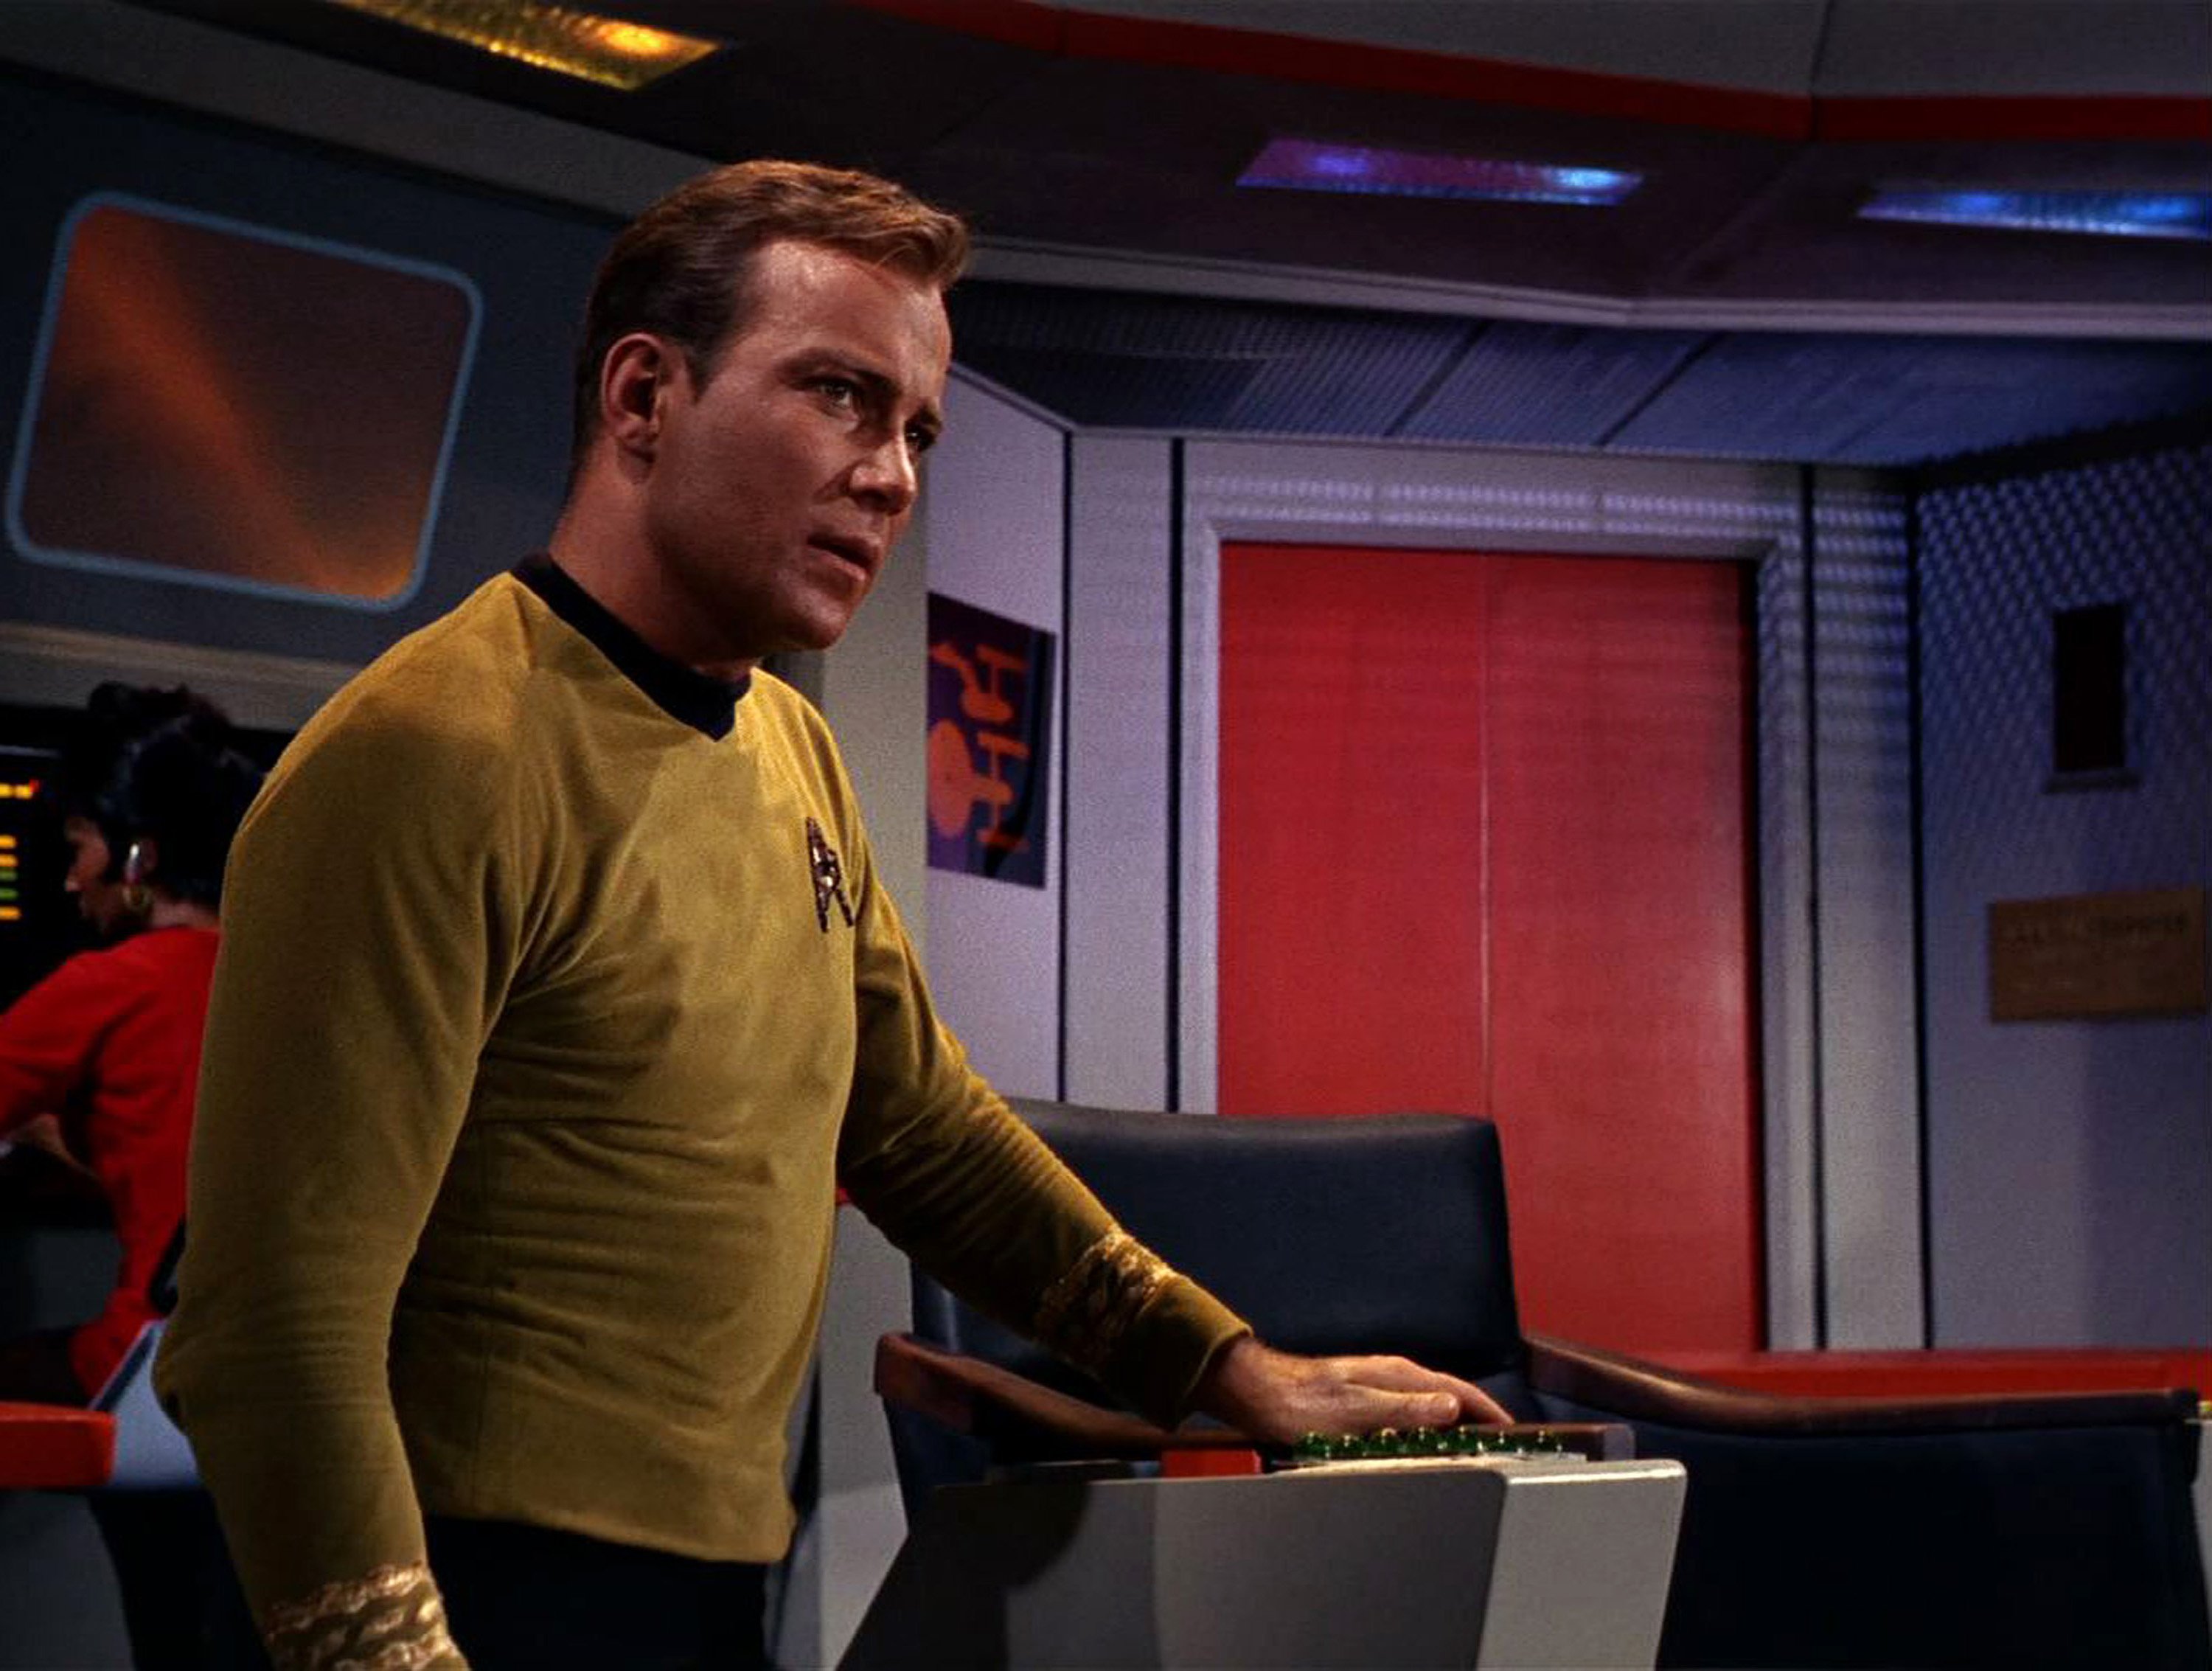 William Shatner as Captain Kirk on the USS Enterprise